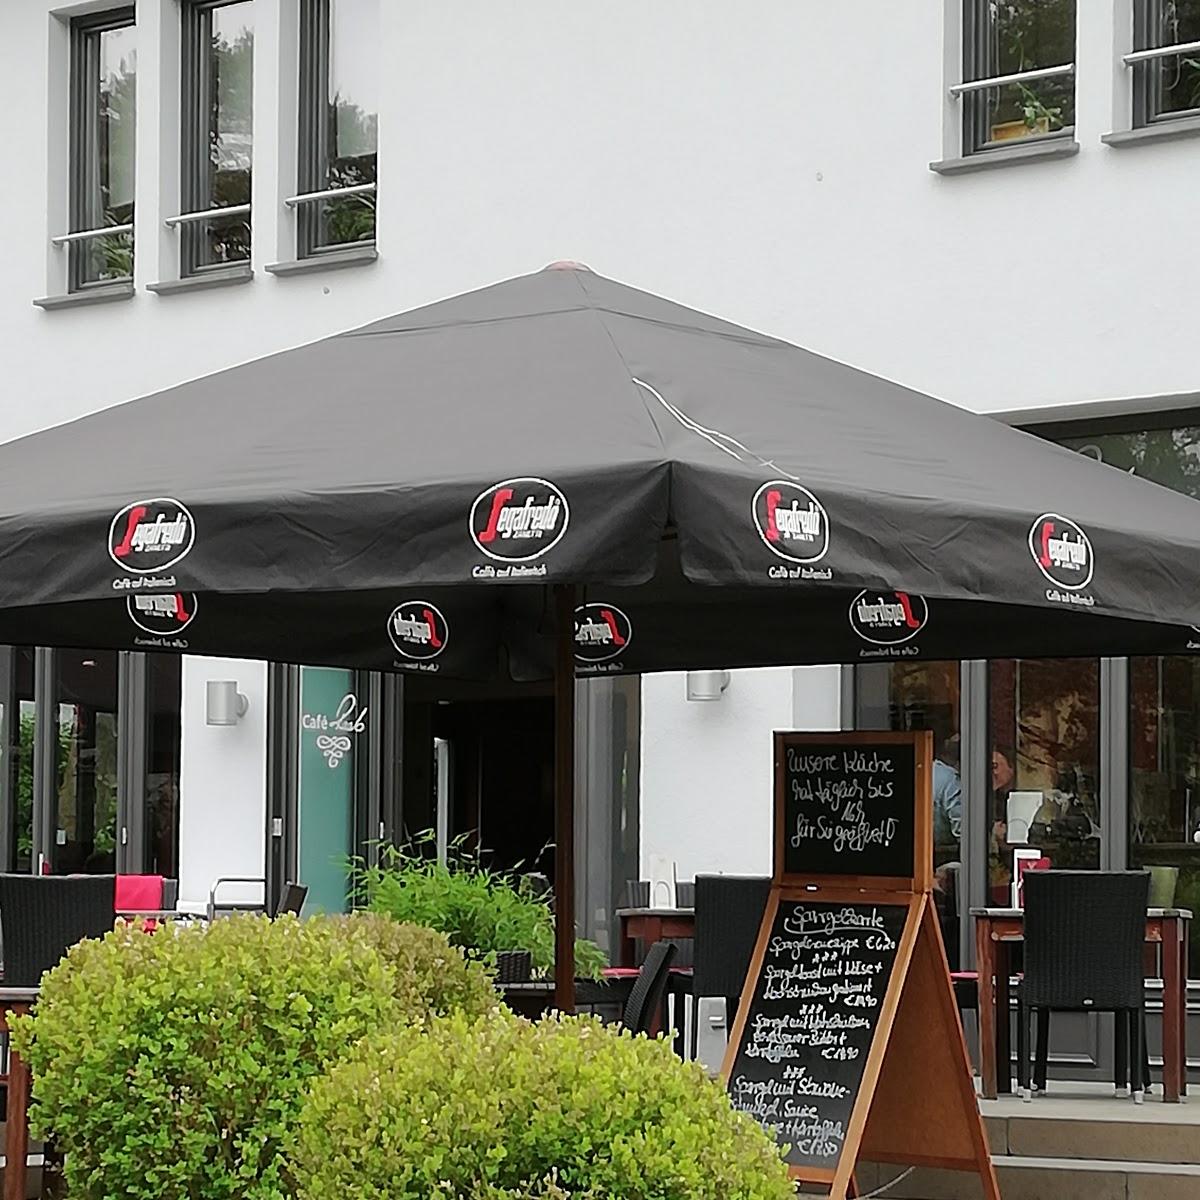 Restaurant "Café Raab" in Mainz